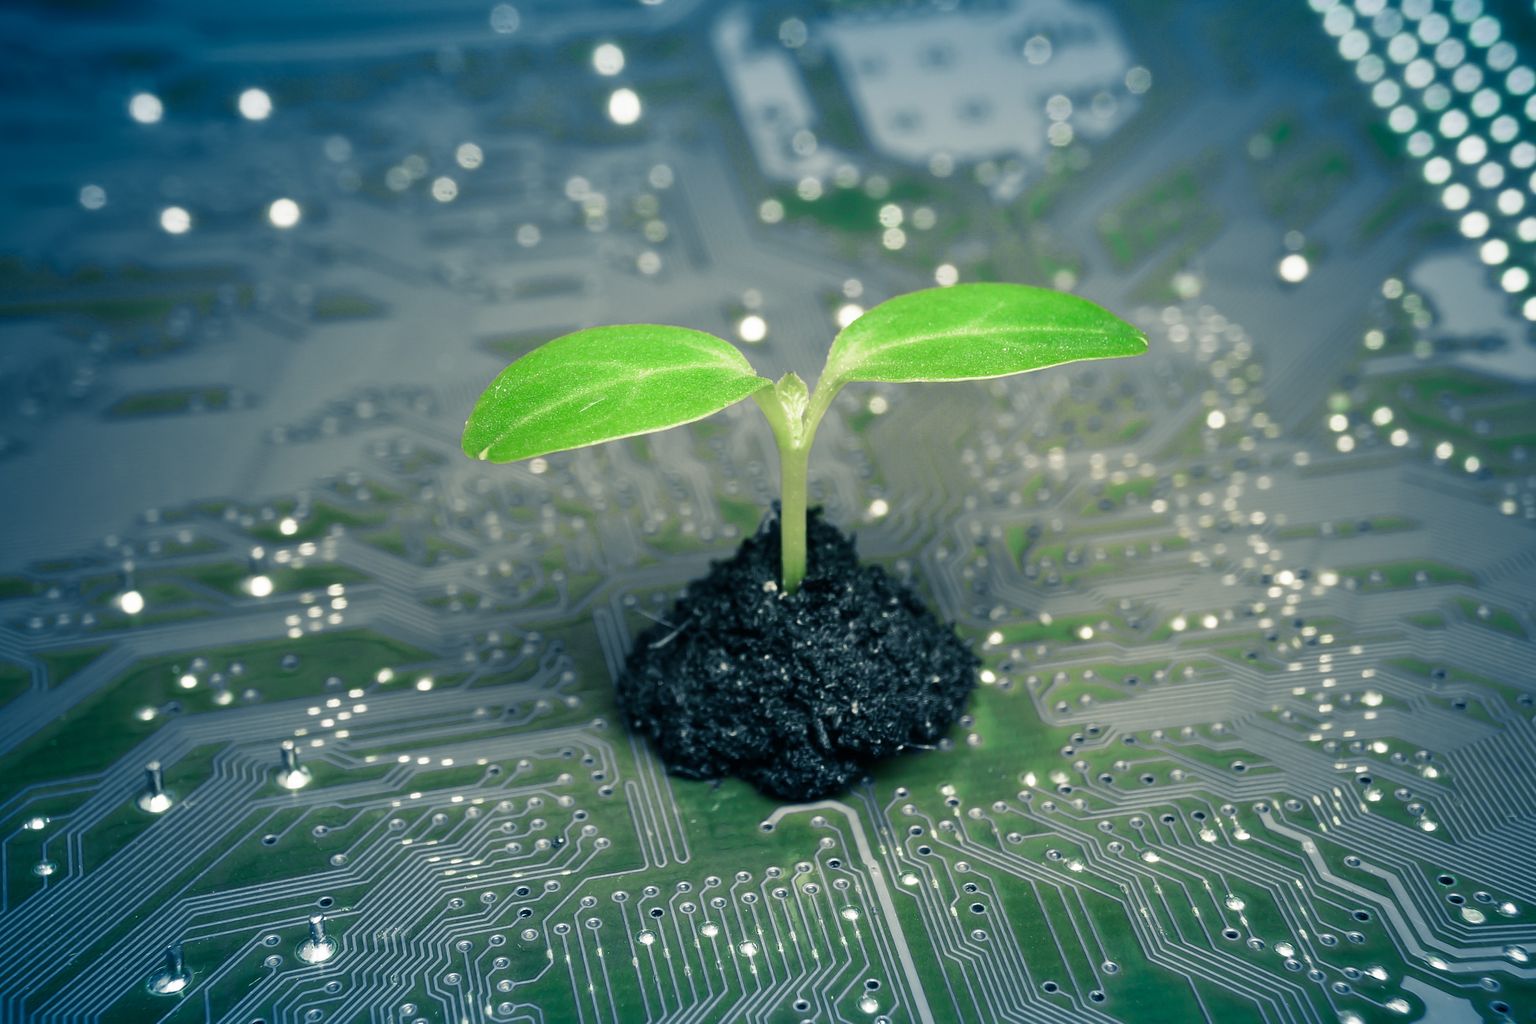 Uus nanotehnoloogia võimaldab meil paremini taimede sisemaailma mõista